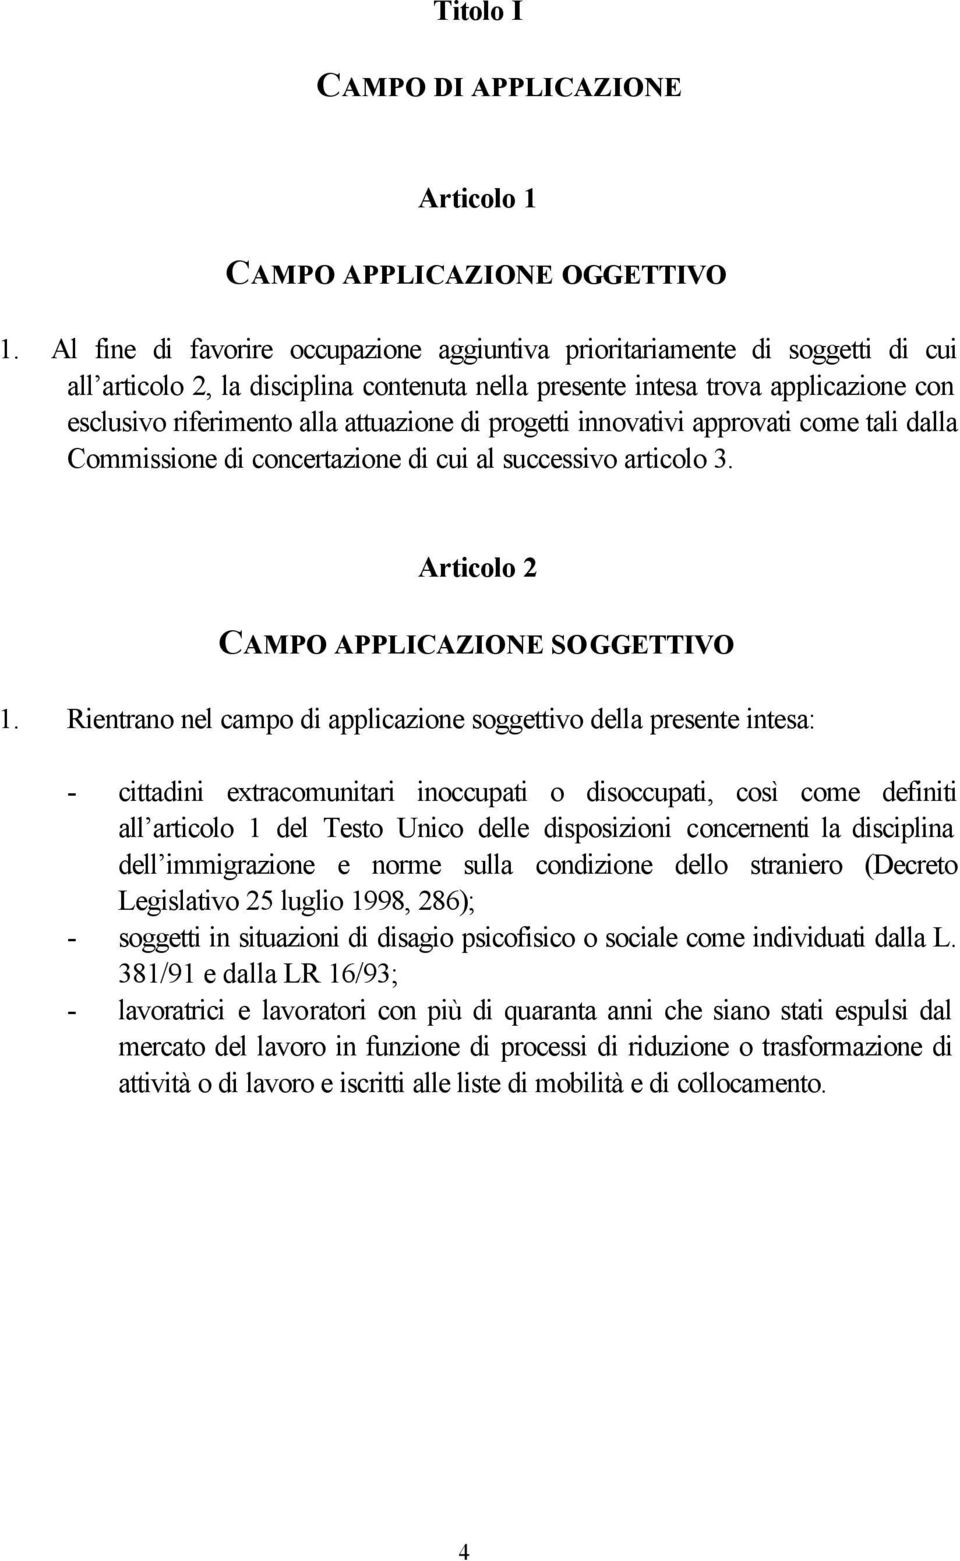 attuazione di progetti innovativi approvati come tali dalla Commissione di concertazione di cui al successivo articolo 3. Articolo 2 CAMPO APPLICAZIONE SOGGETTIVO 1.